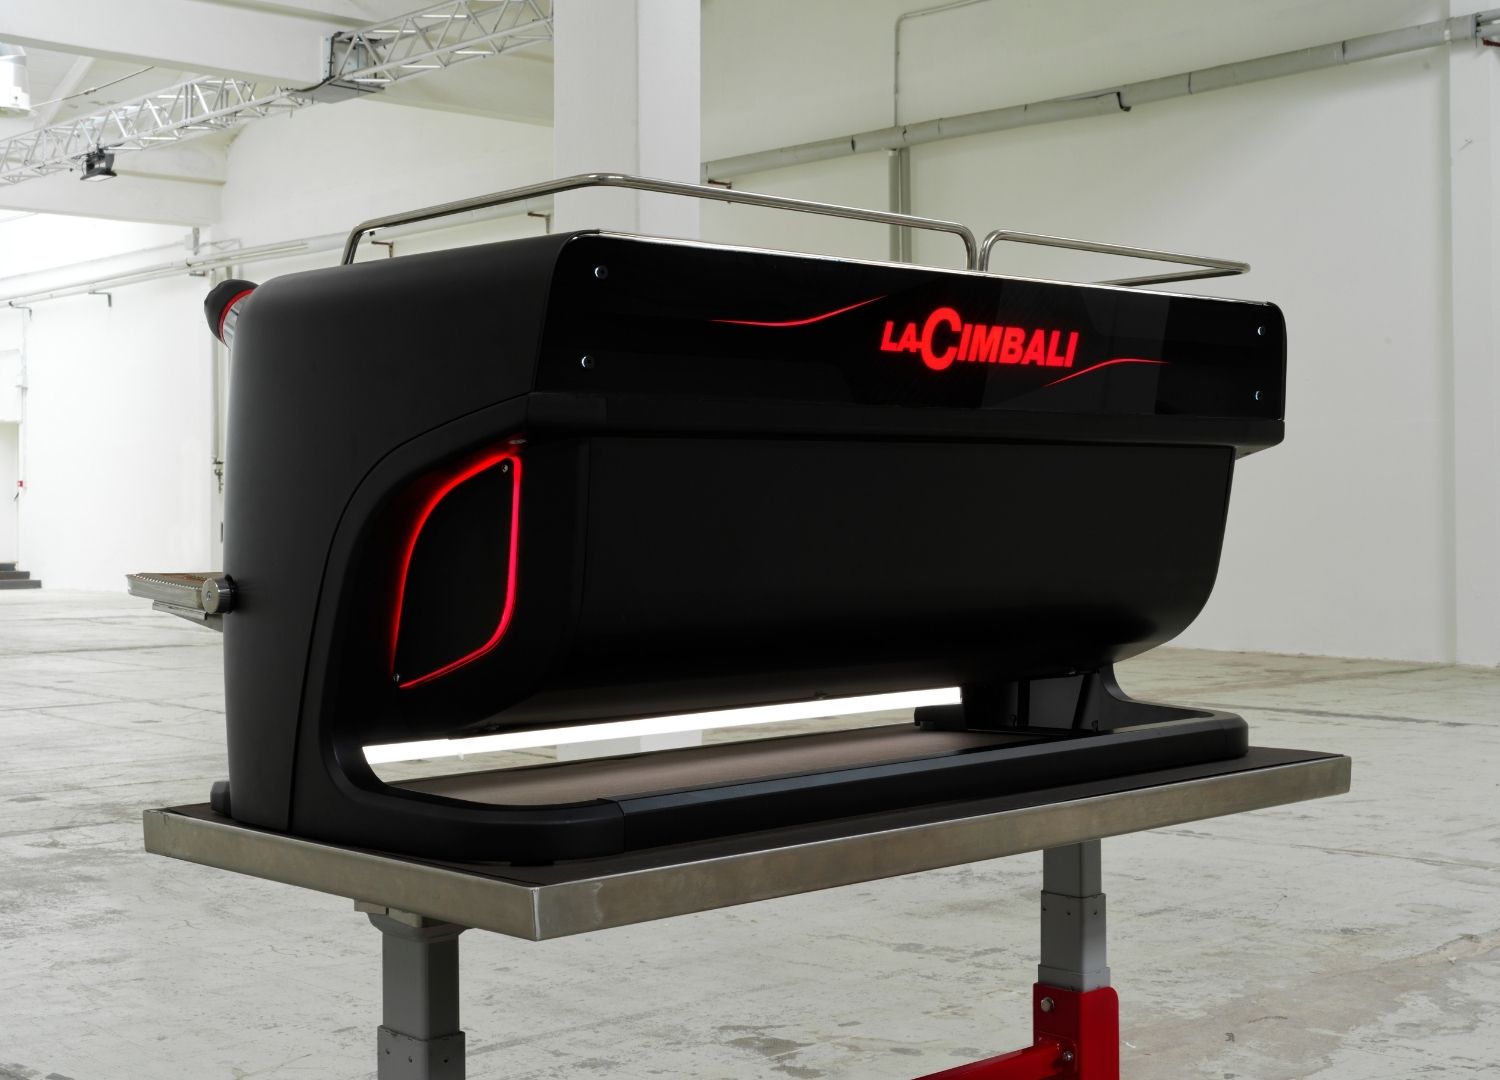 LaCimbali M200 by Valerio Cometti + V12 Design Studio _ Coffee machine 